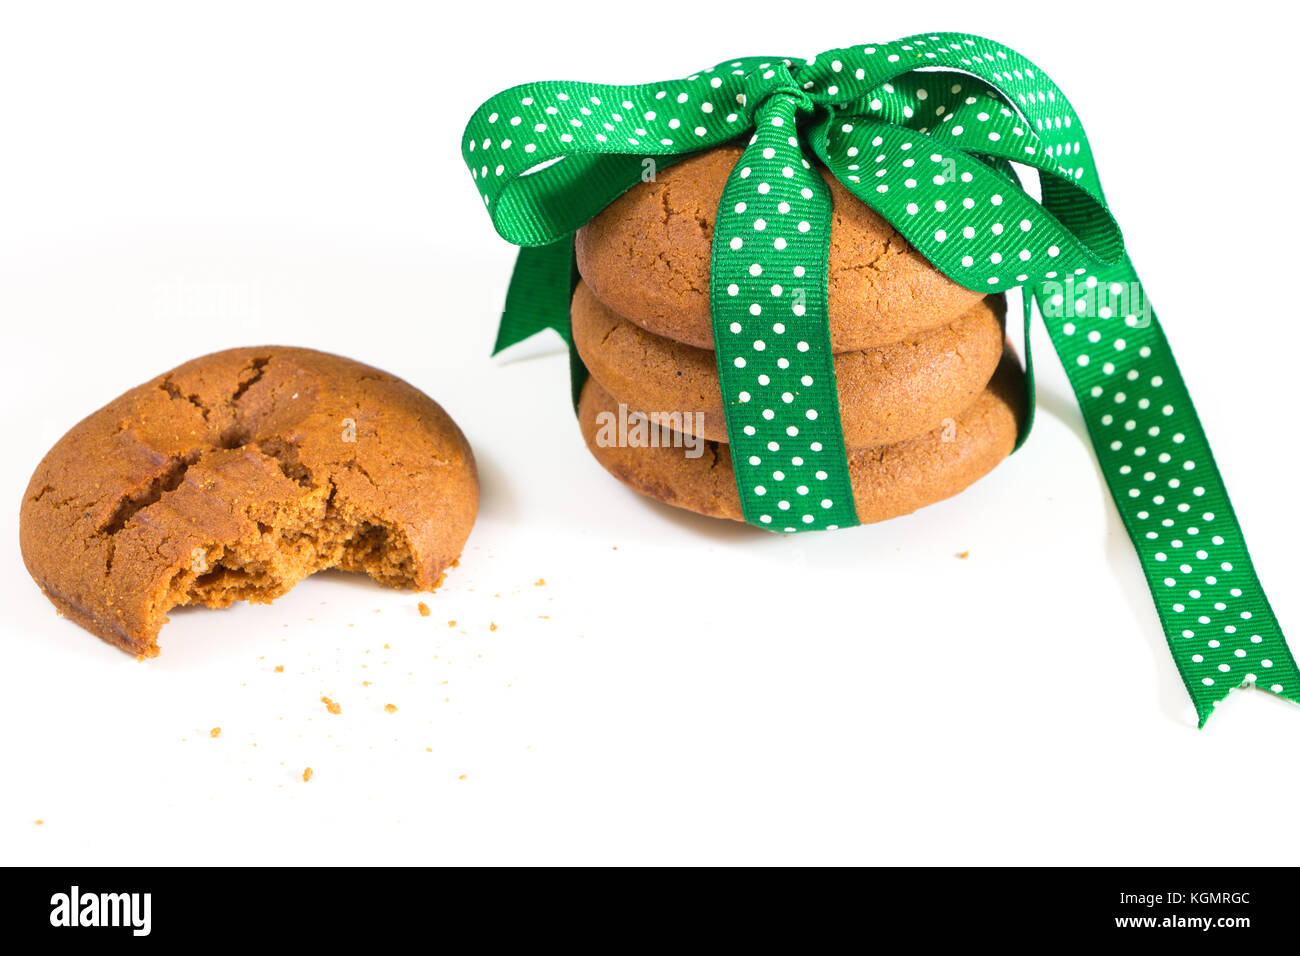 Cookies mit grünem Band und gebissen Cookie mit krümel gebunden, auf weißem Hintergrund. Stockfoto